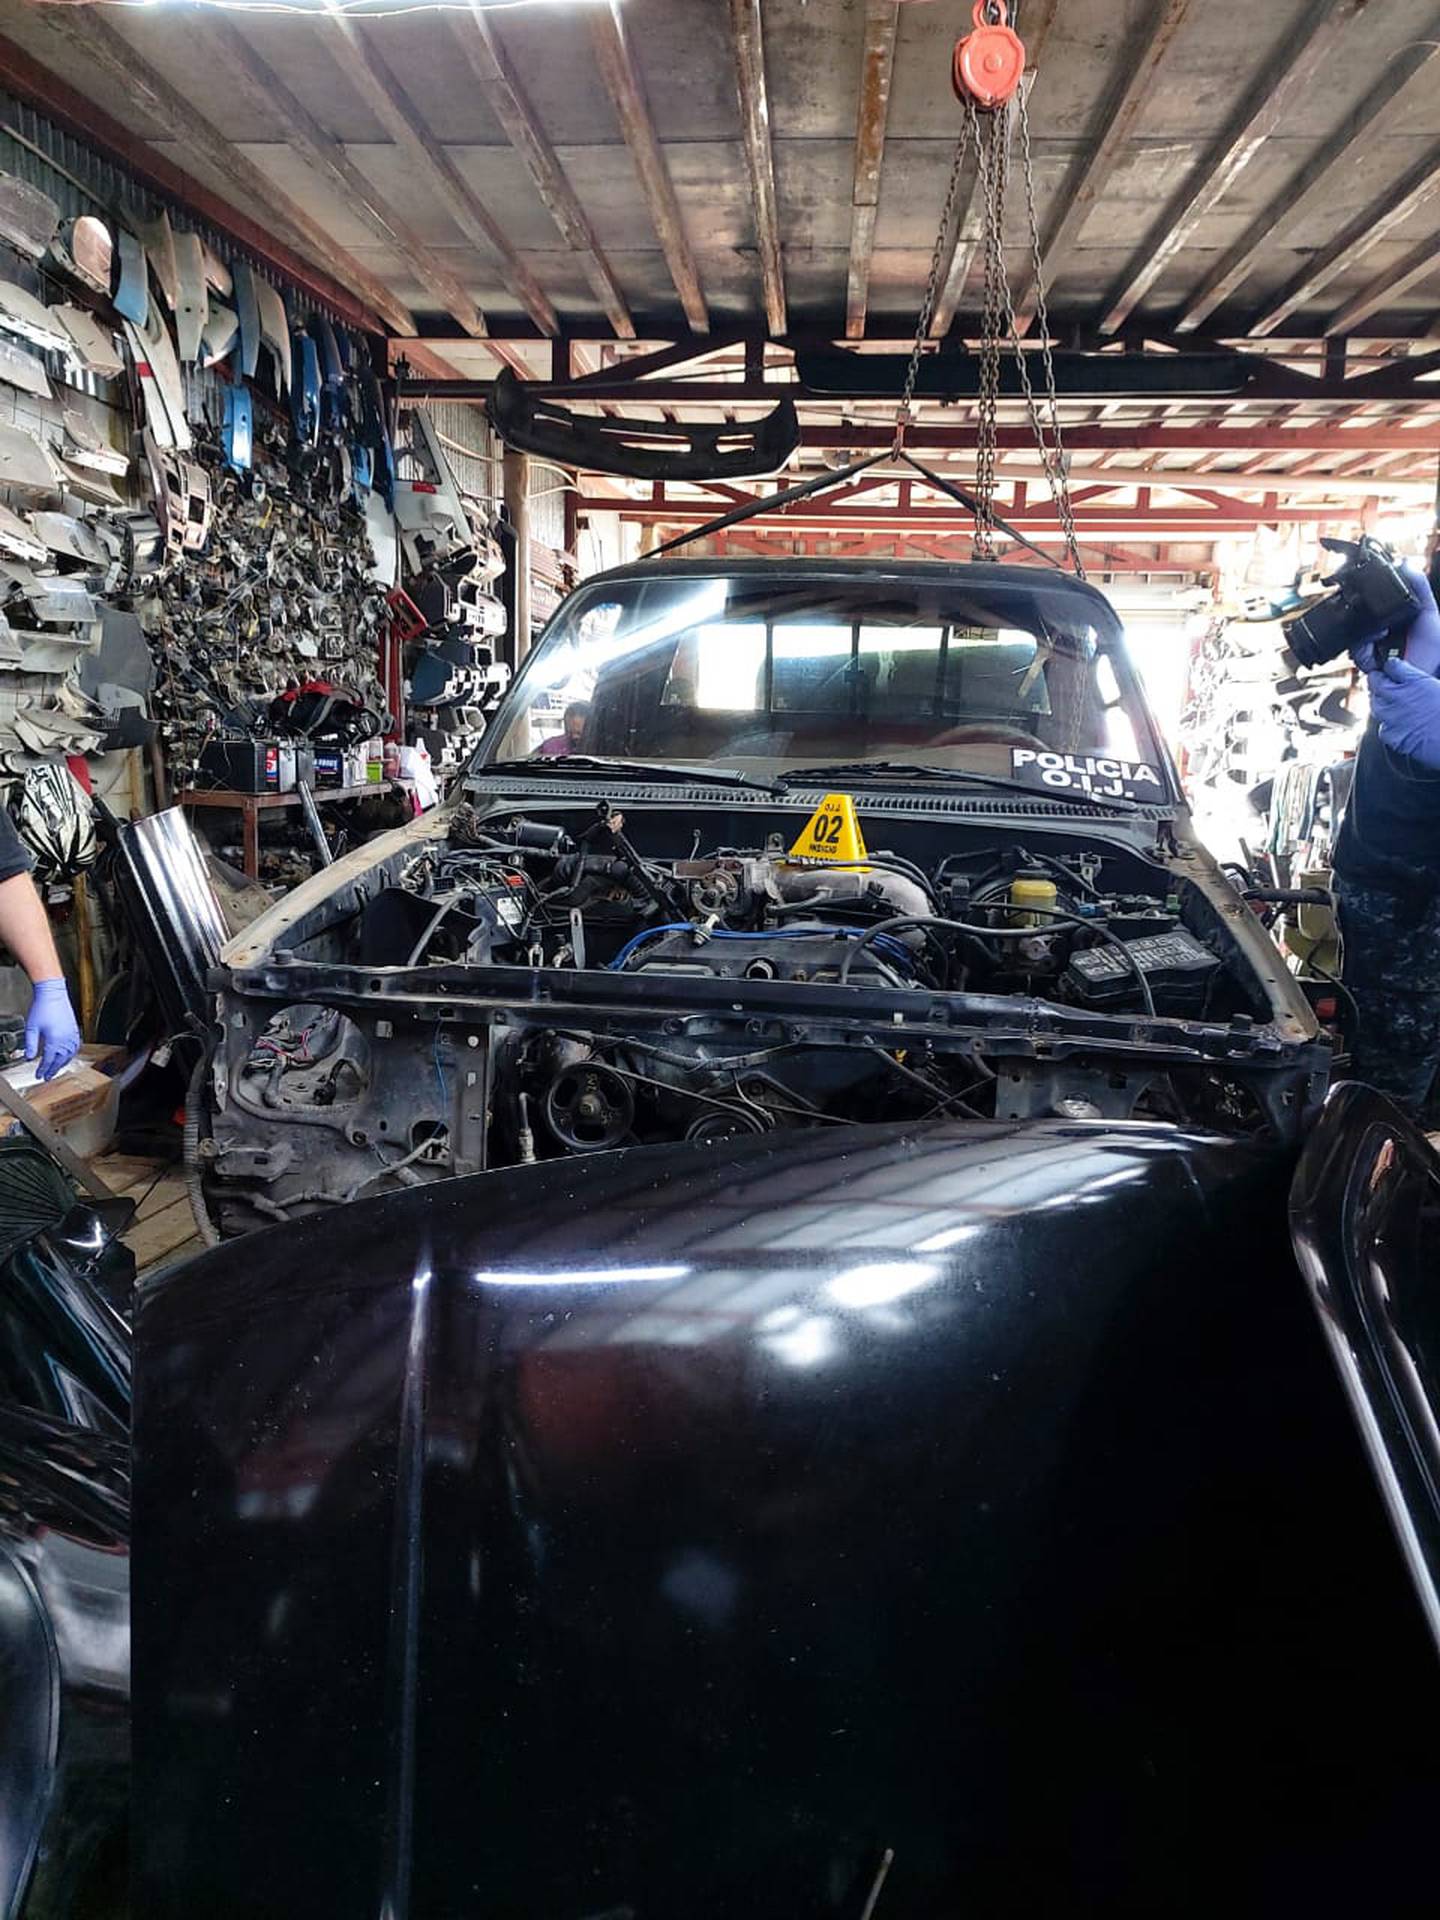 OIJ recupera carro robado al allanar venta de repuestos en La Guácima. Foto OIJ.